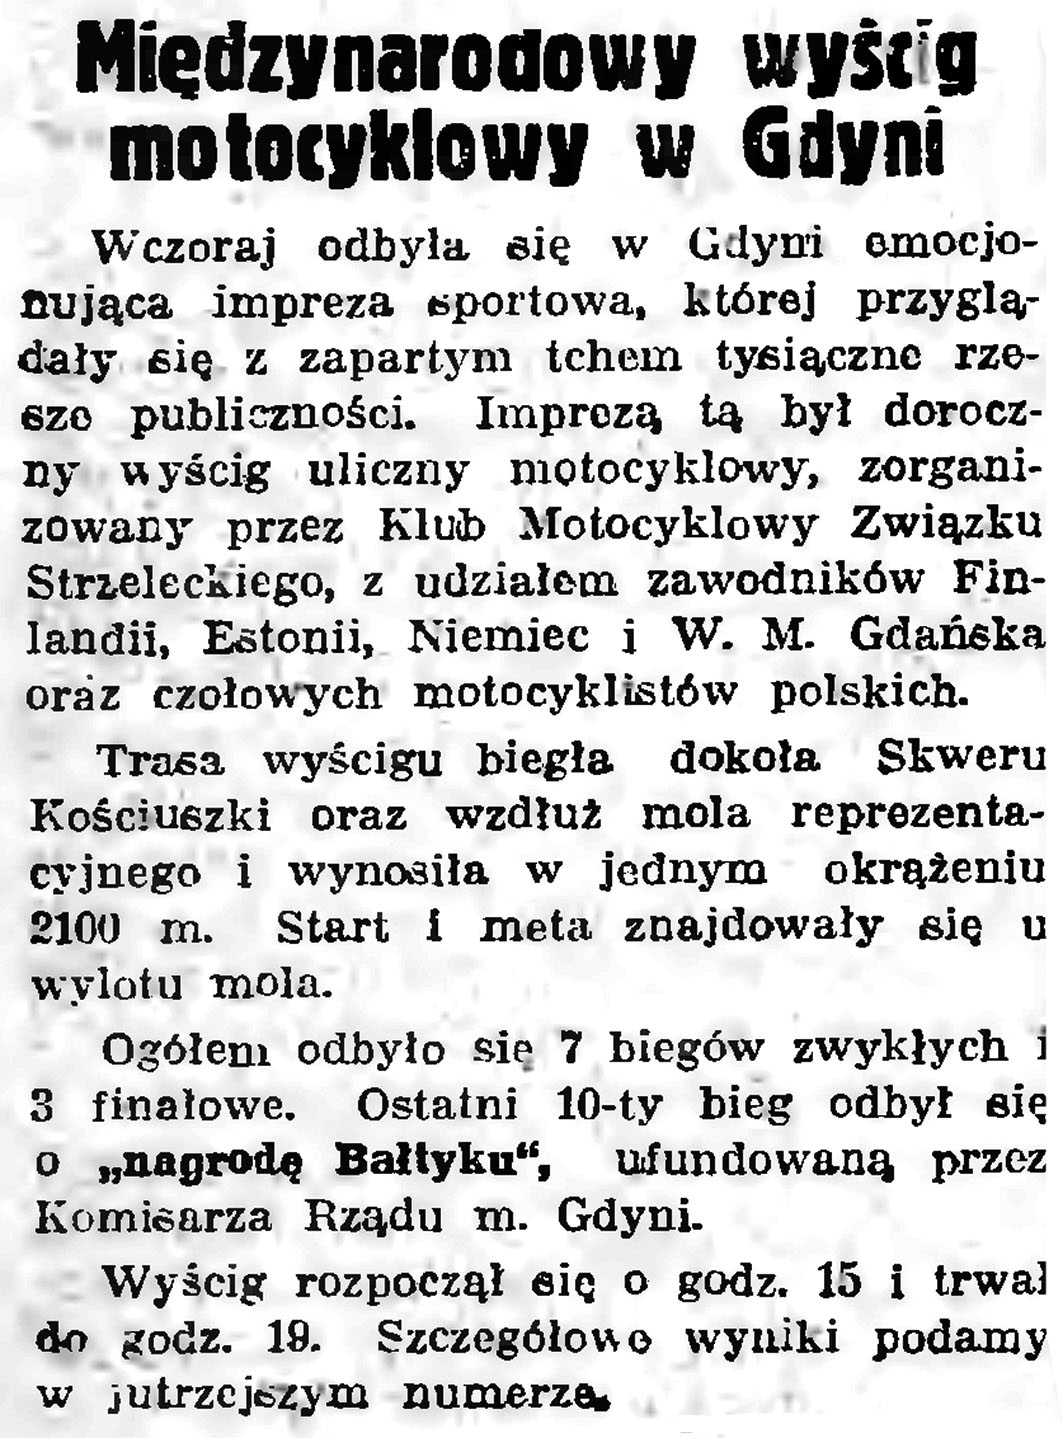 Międzynarodowy wyścig motocyklowy w Gdyni // Gazeta Gdańska. -1938, nr 150, s. 4